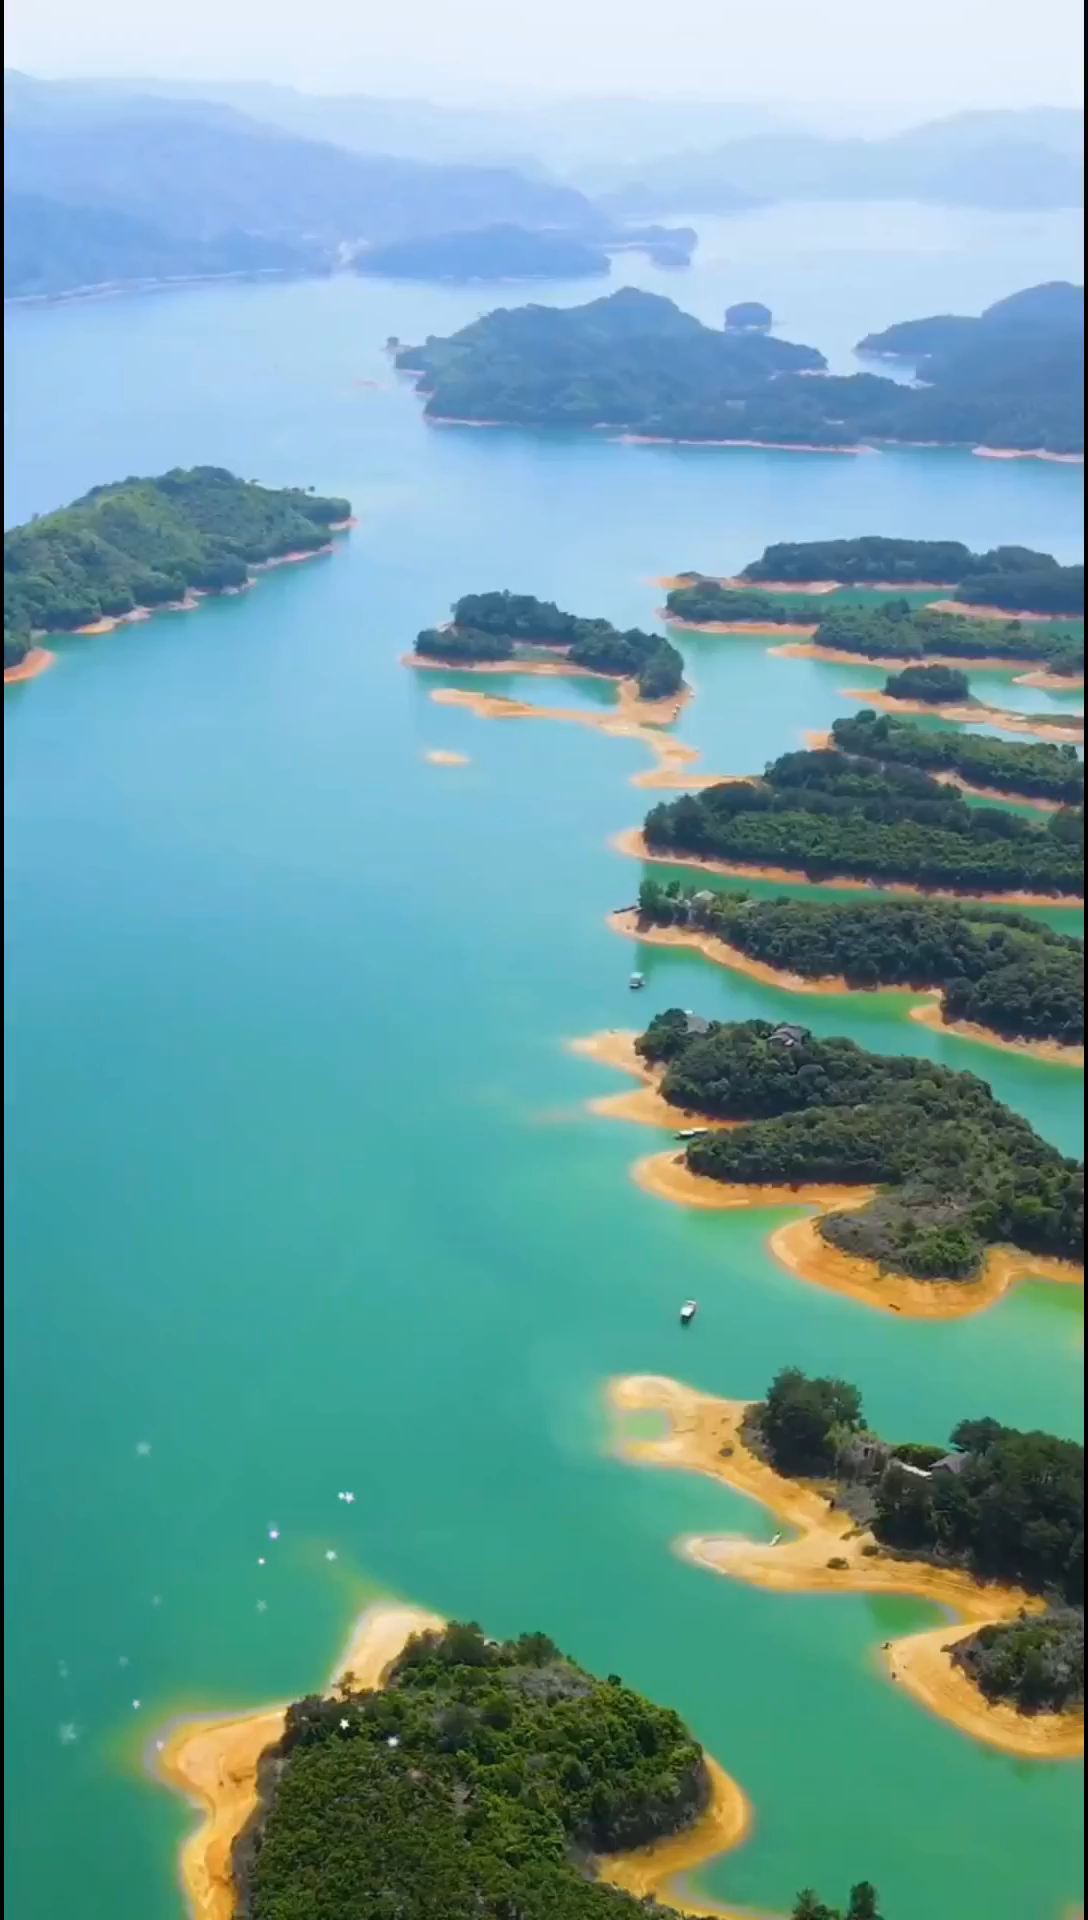 千岛湖被誉为“千岛碧水画中游”